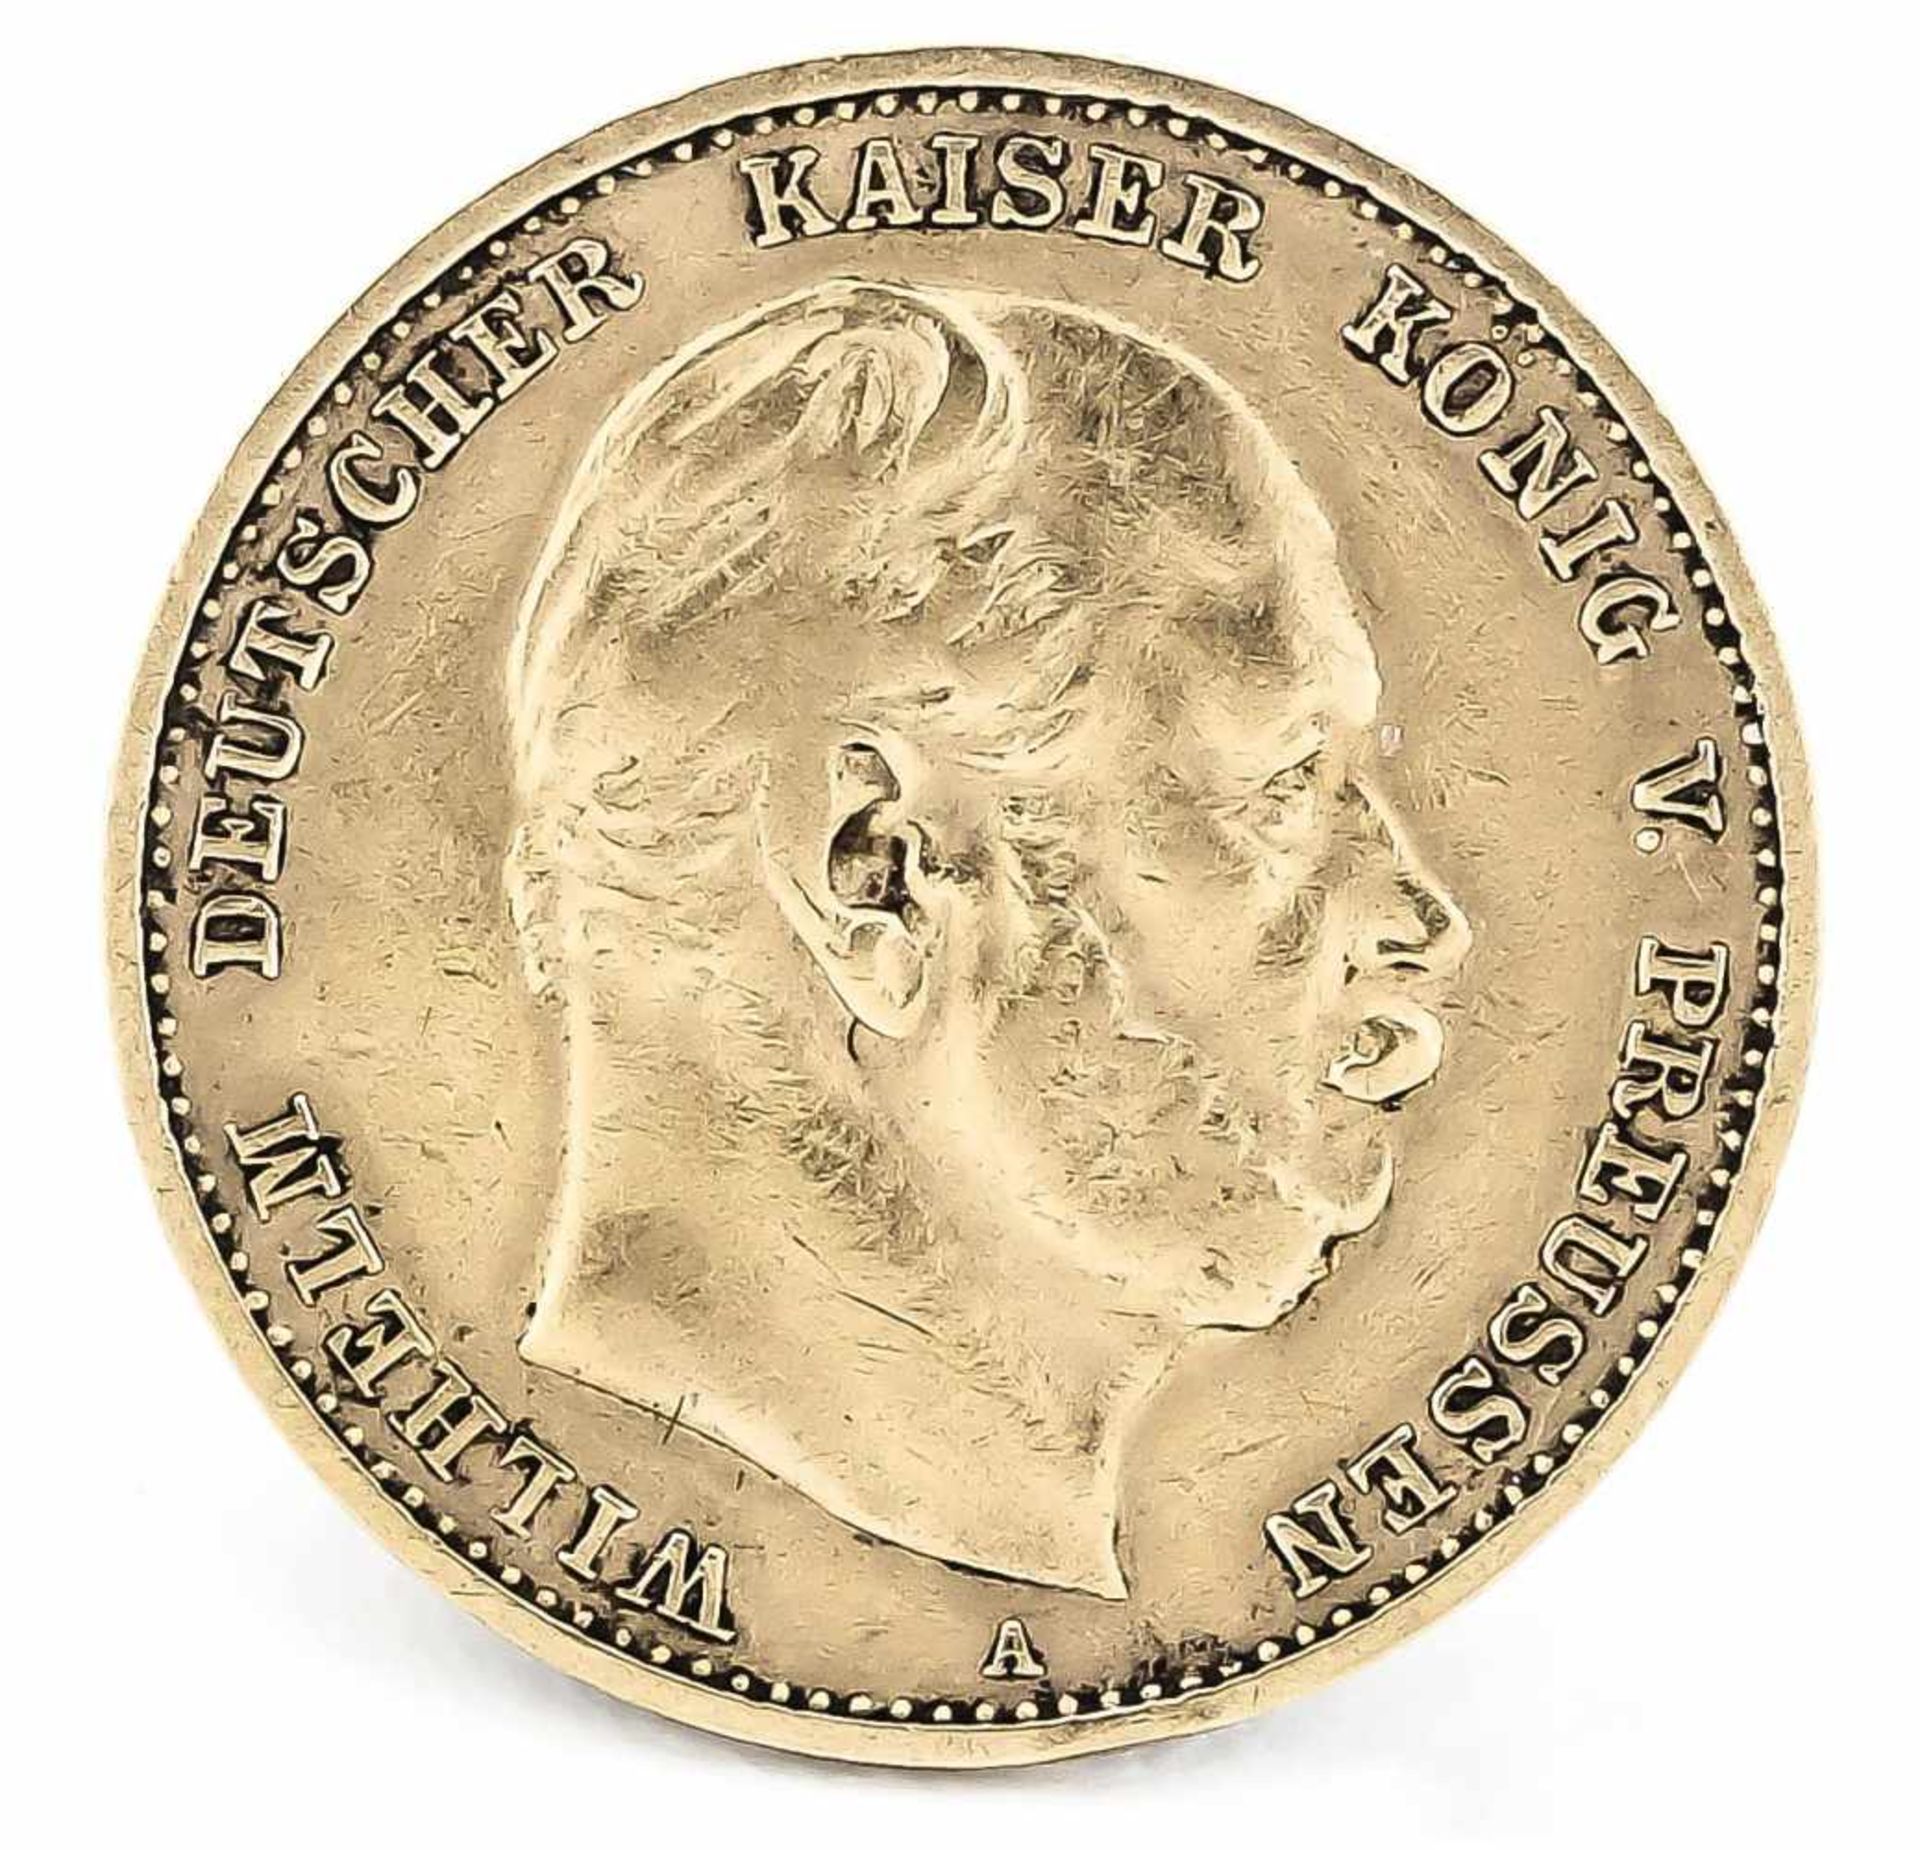 10 Mark, Preußen, Wilhelm Deutscher Kaiser König von Preußen, 1880 A, in s-ss